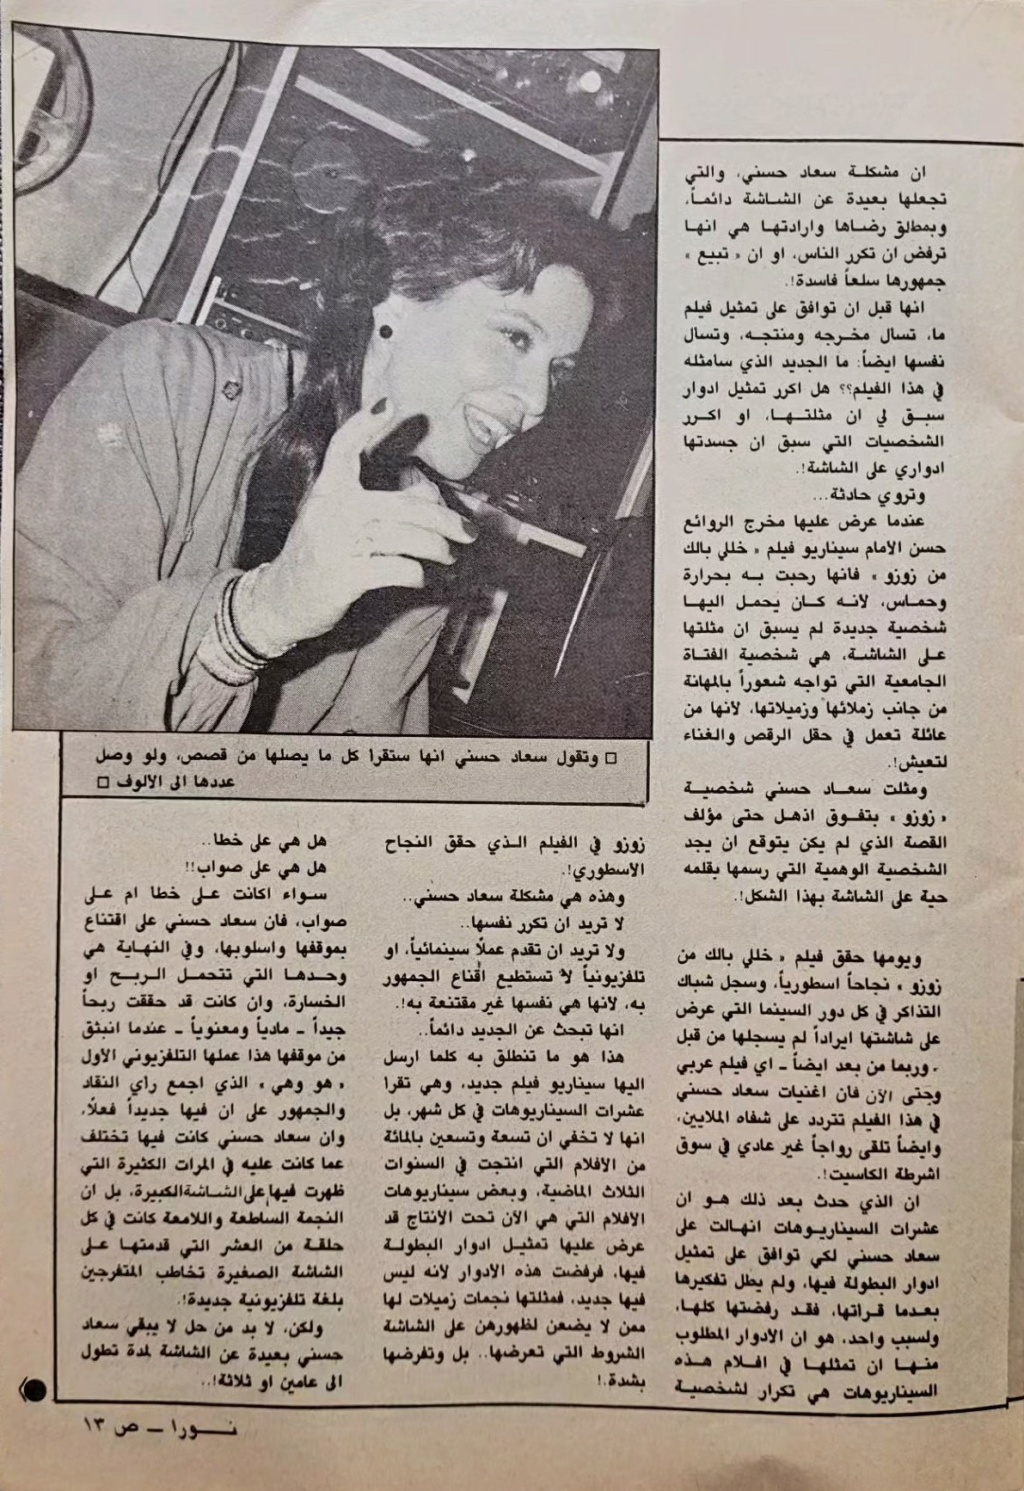 1985 - حوار صحفي : سعاد حسني .. تنادي أهل الموهبة وتبحث عندهم عن الجديد من القصص ! 1985 م 2104